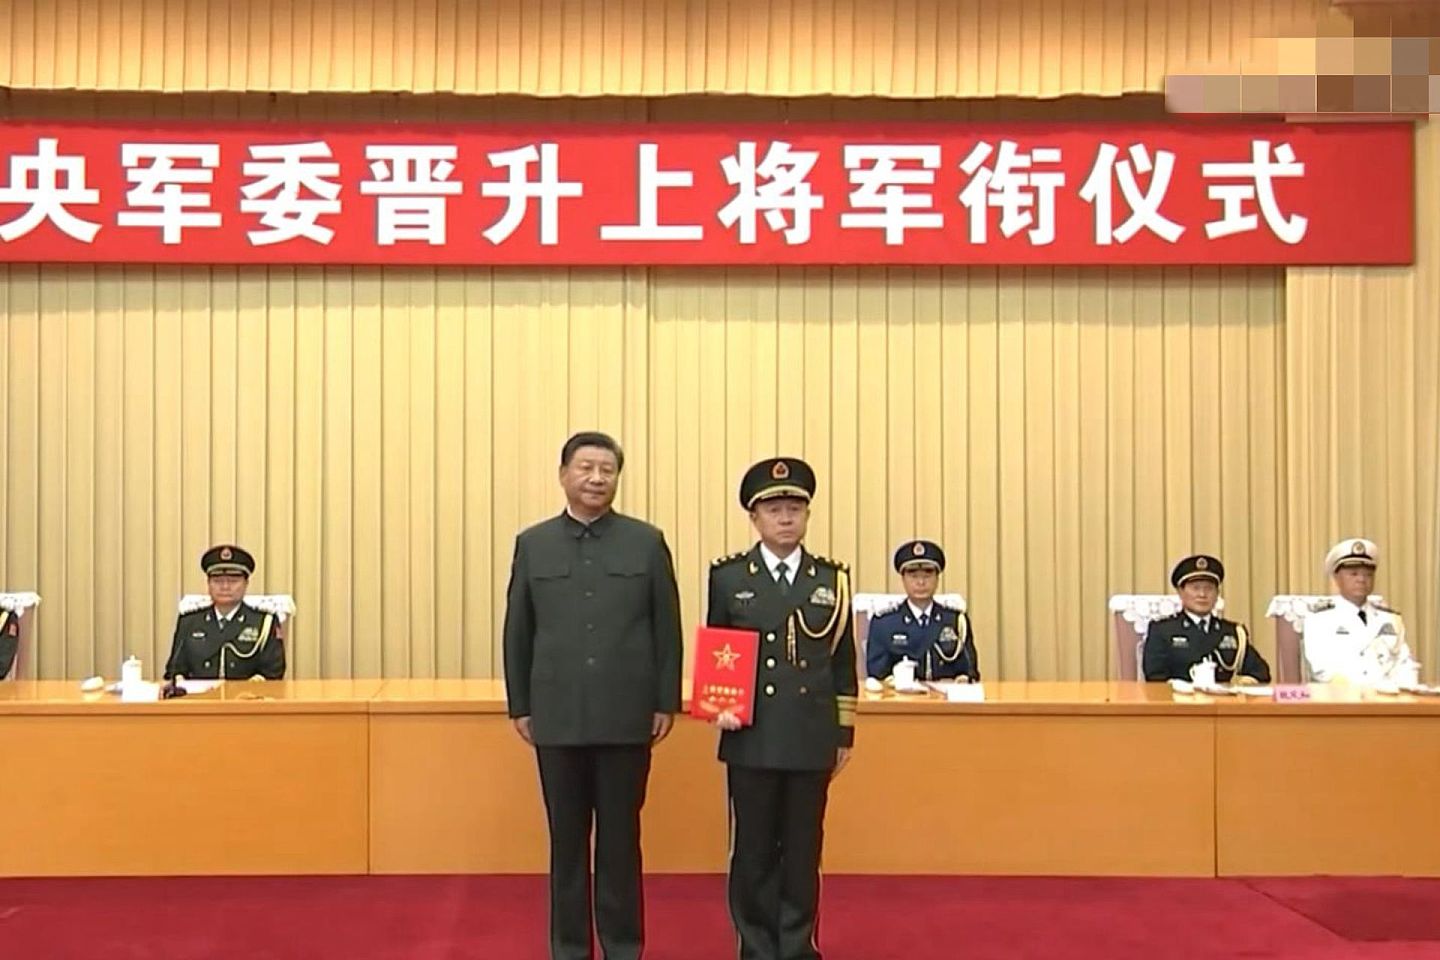 解放军西部战区司令在短时间内频繁换人。图为习近平（左）向汪海江（右）颁授上将军衔证书。（中国央视截图）